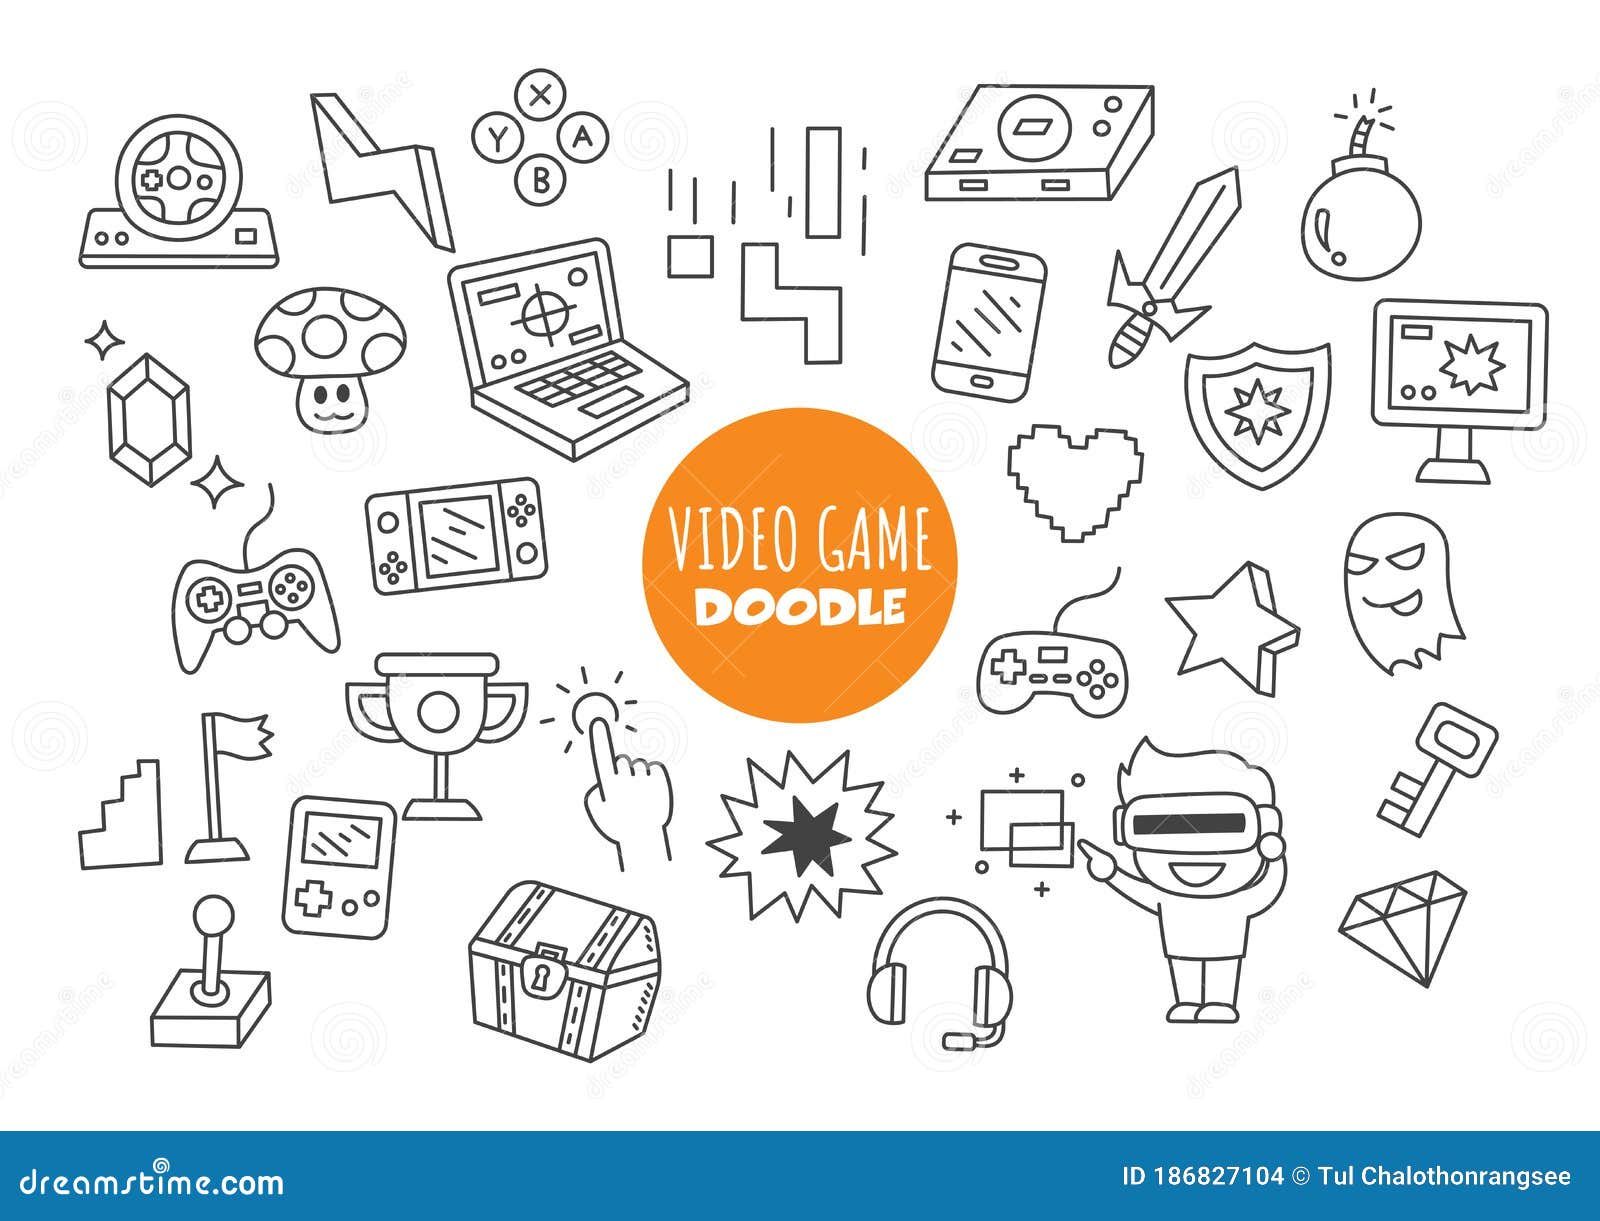 Gamer Doodle Stock Illustrations – 1,102 Gamer Doodle Stock